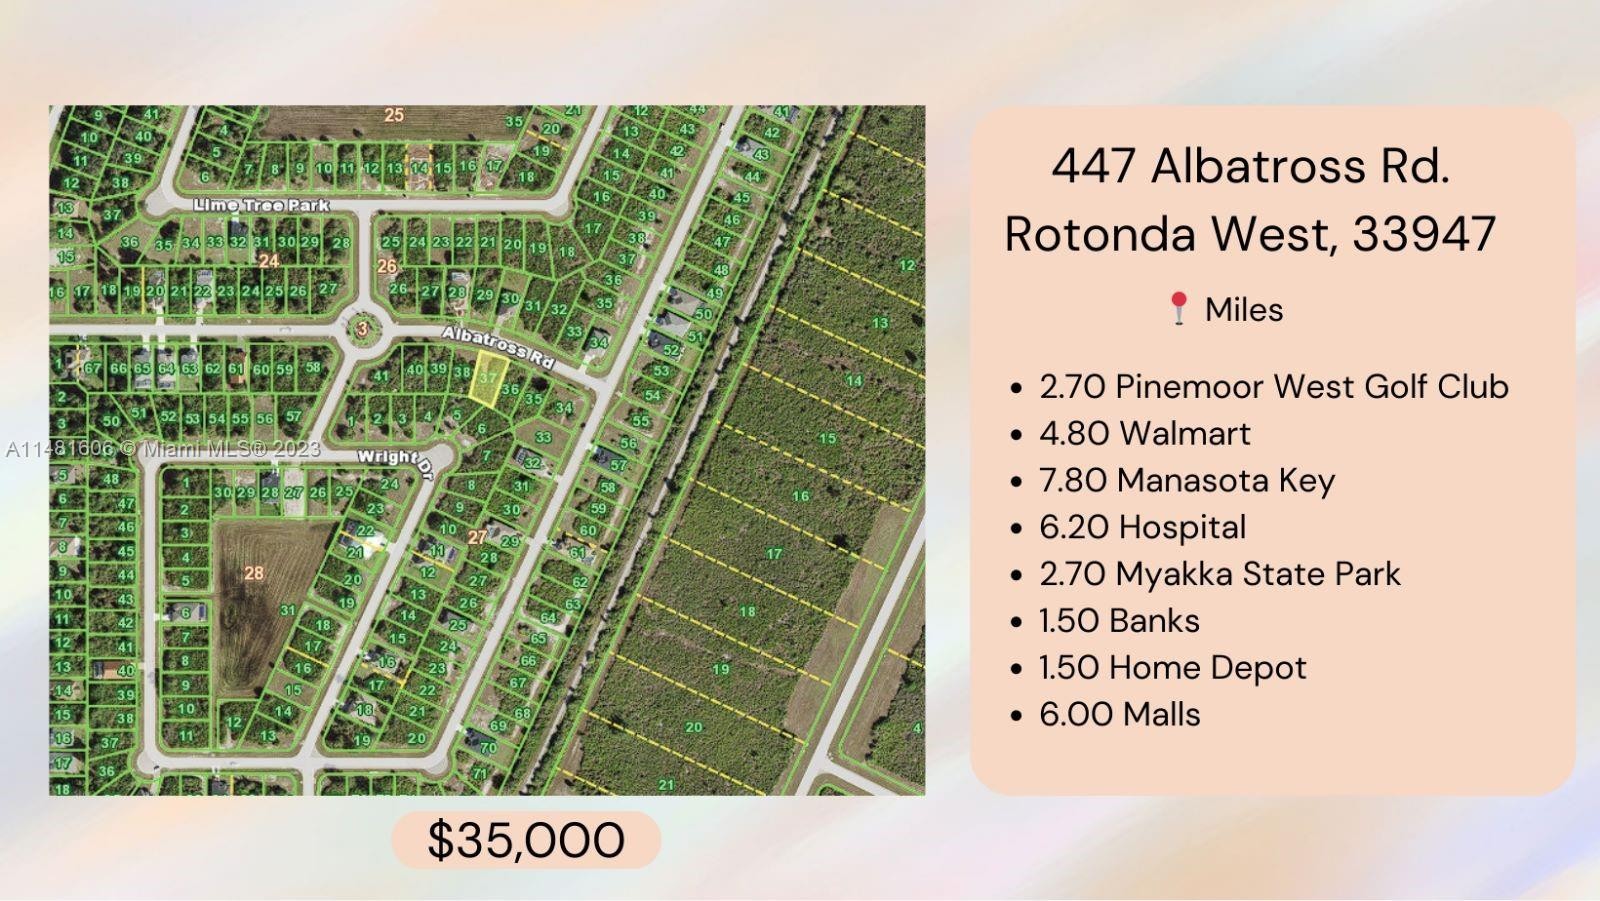 1. 447 Albatross Road